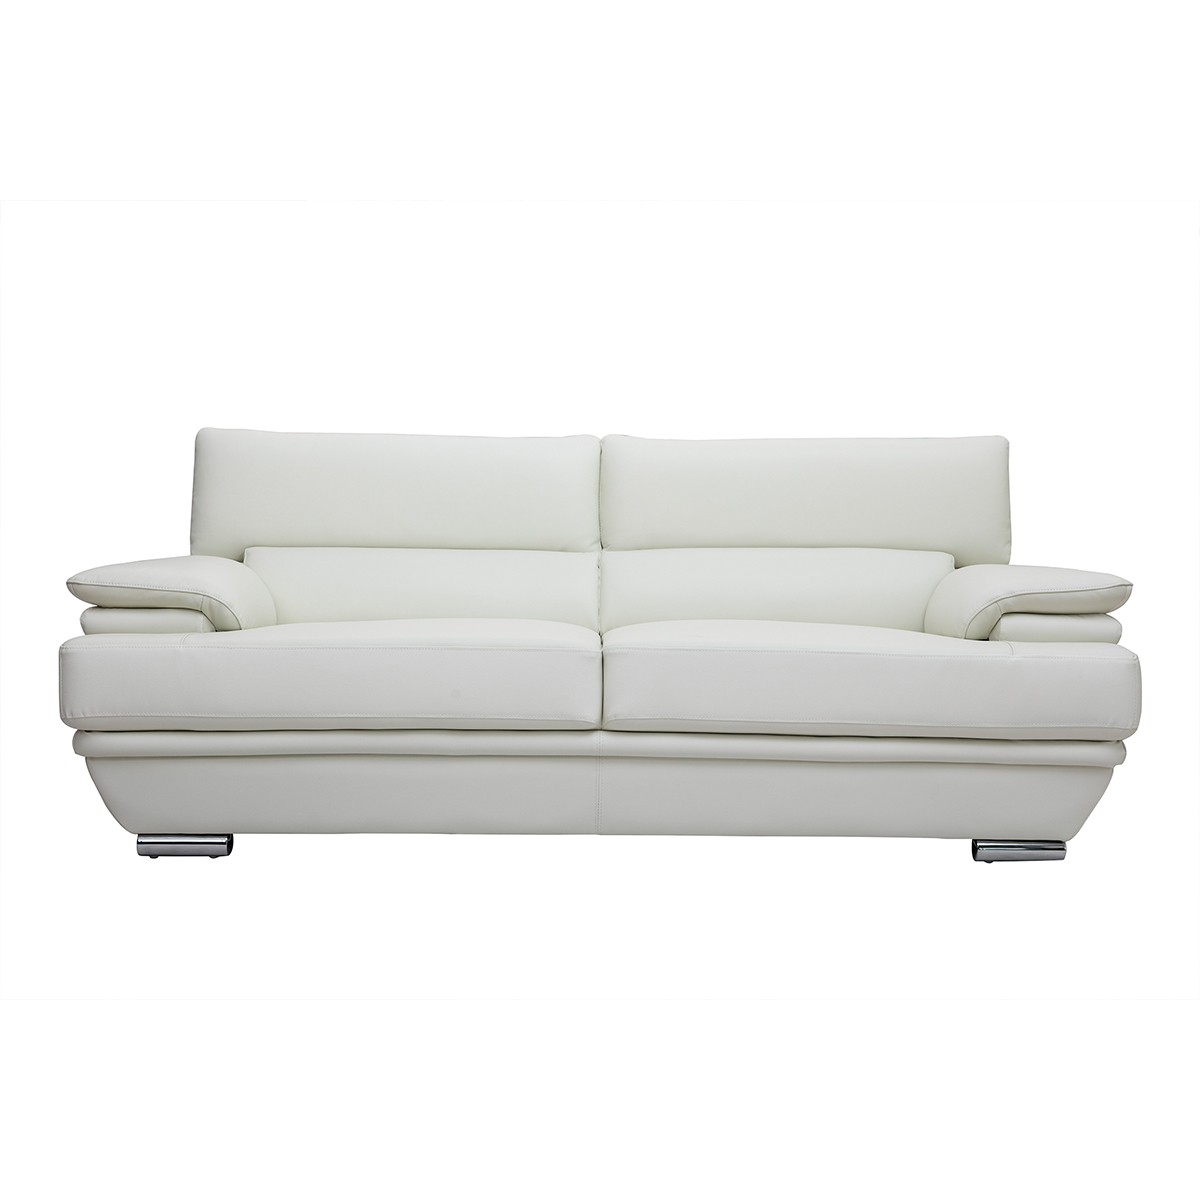 Canapé design avec têtières ajustables 3 places cuir blanc et acier chromé EWING vue1